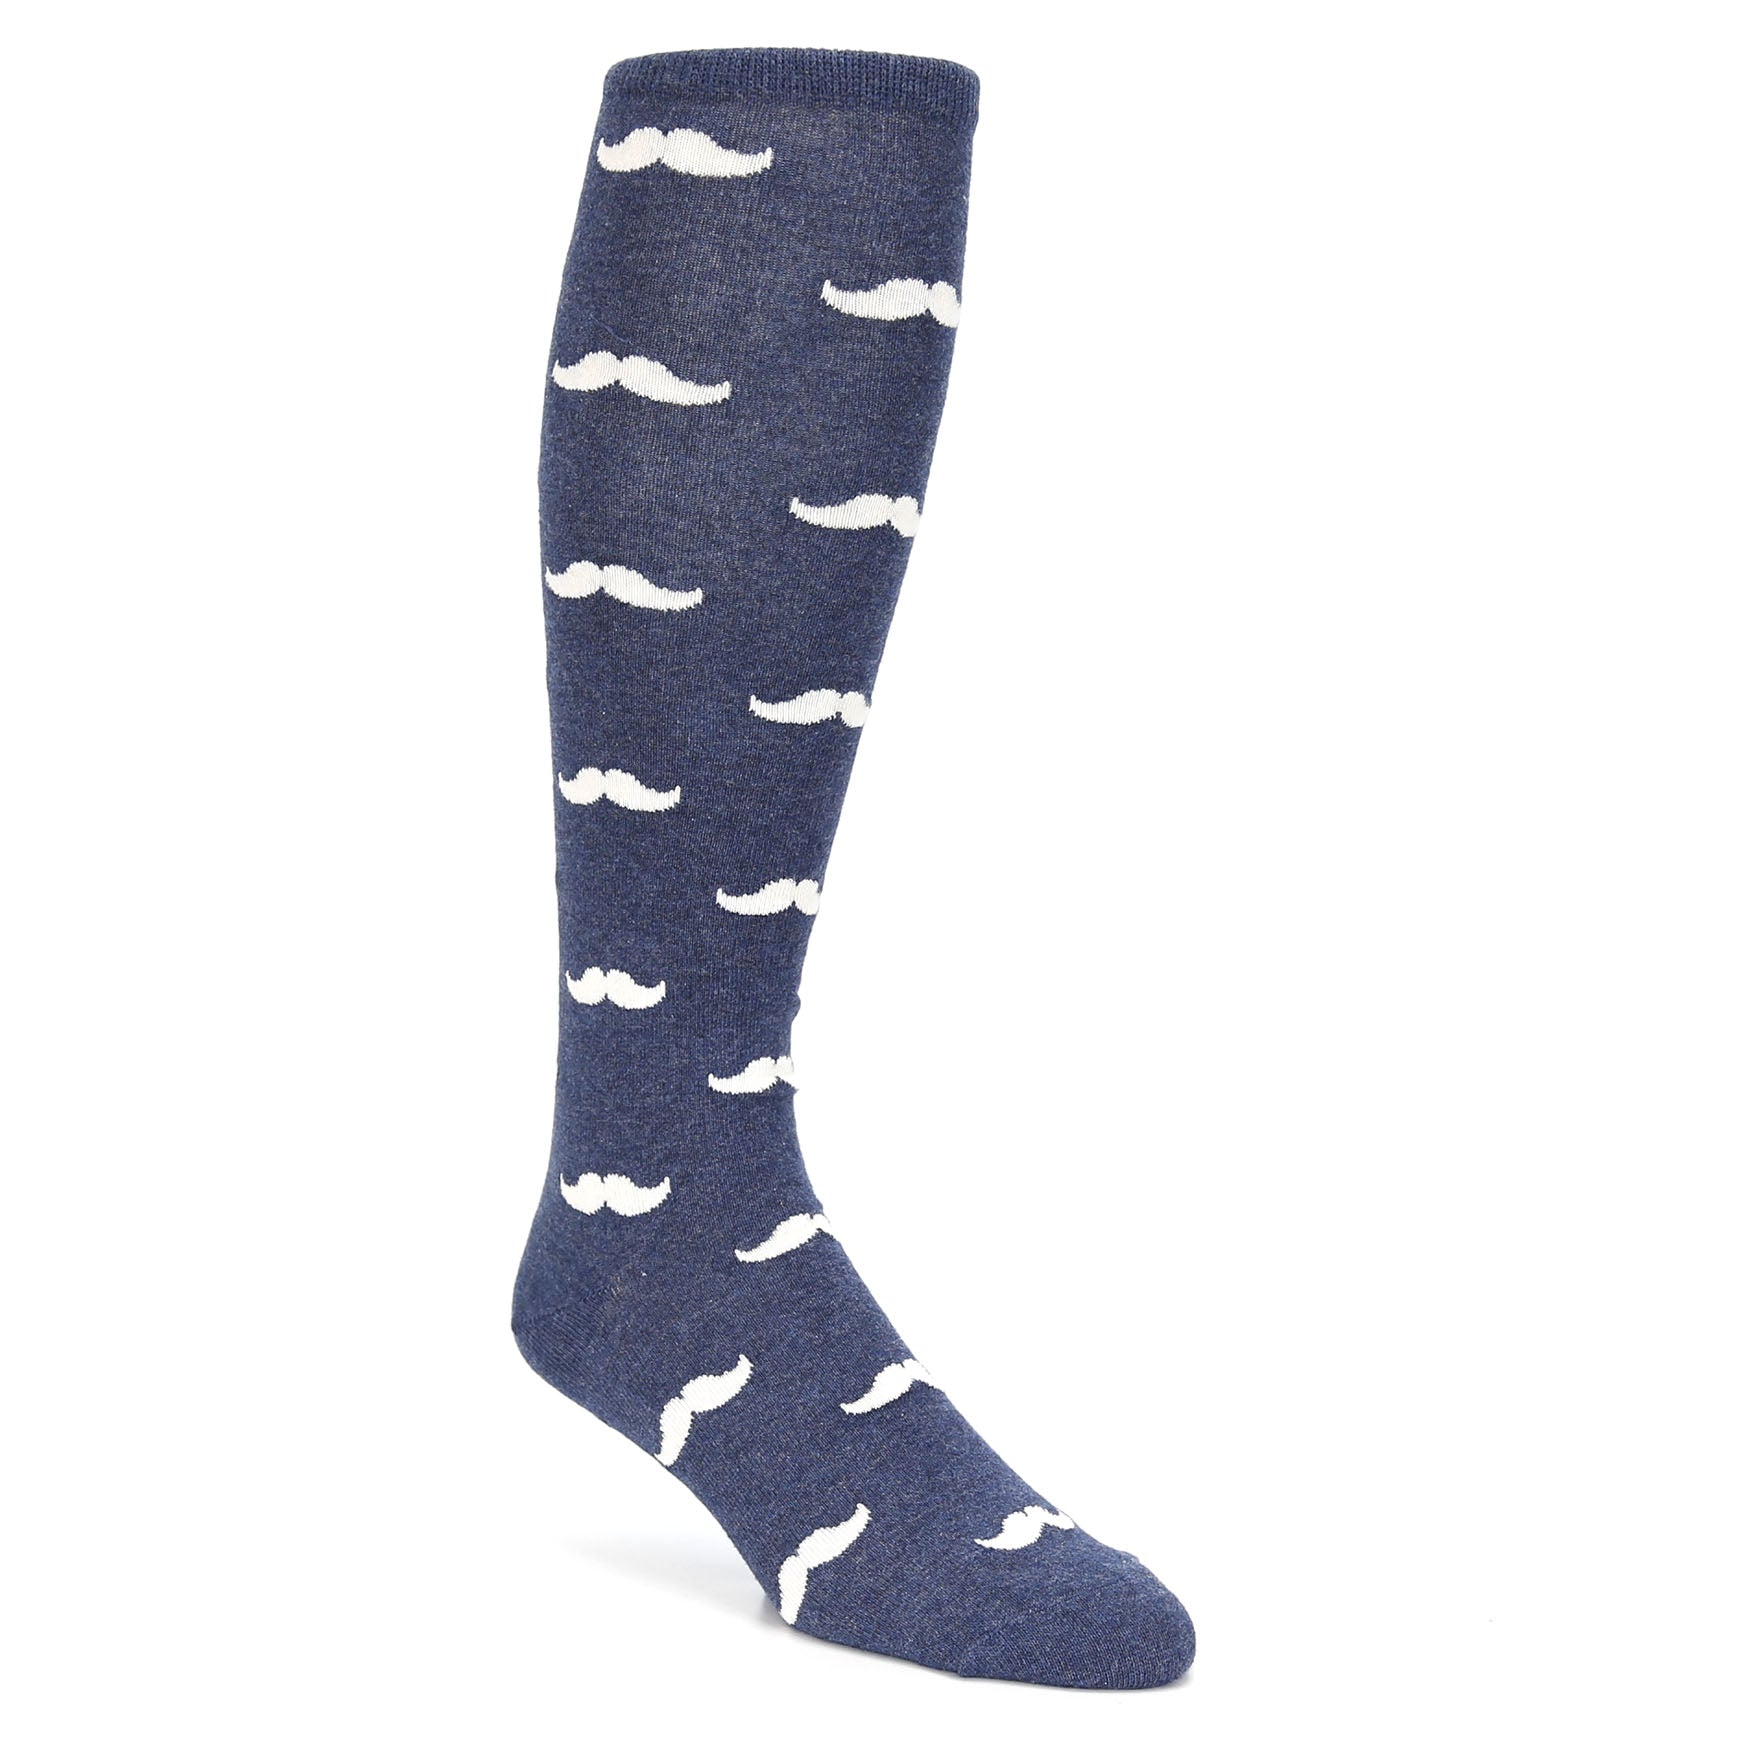 Heathered Navy Mustache Socks - Men's Over-the-Calf Socks